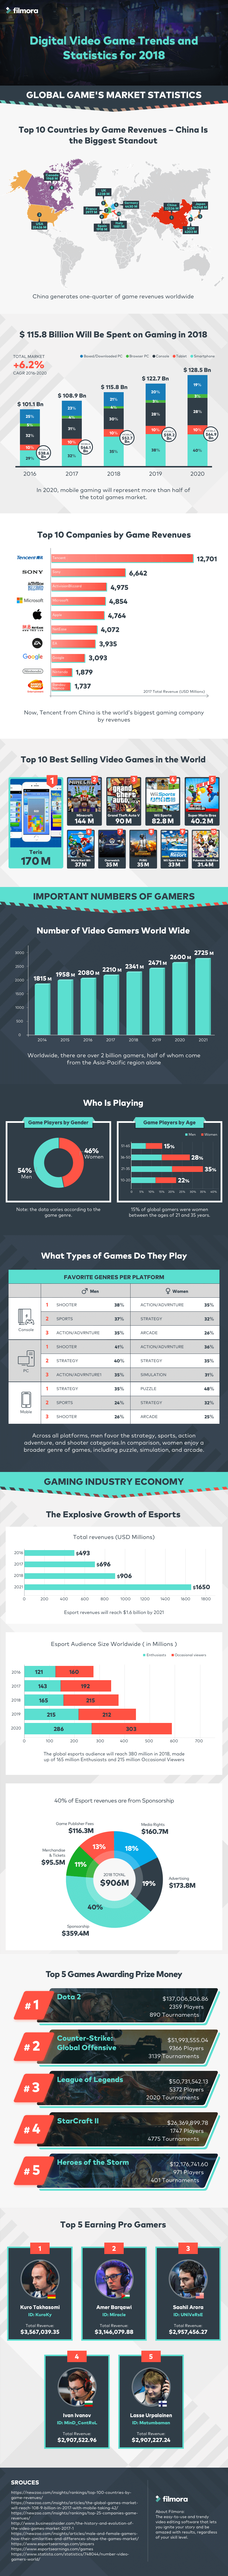 إحصائيات ألعاب الفيديو والمحتوى الرائج